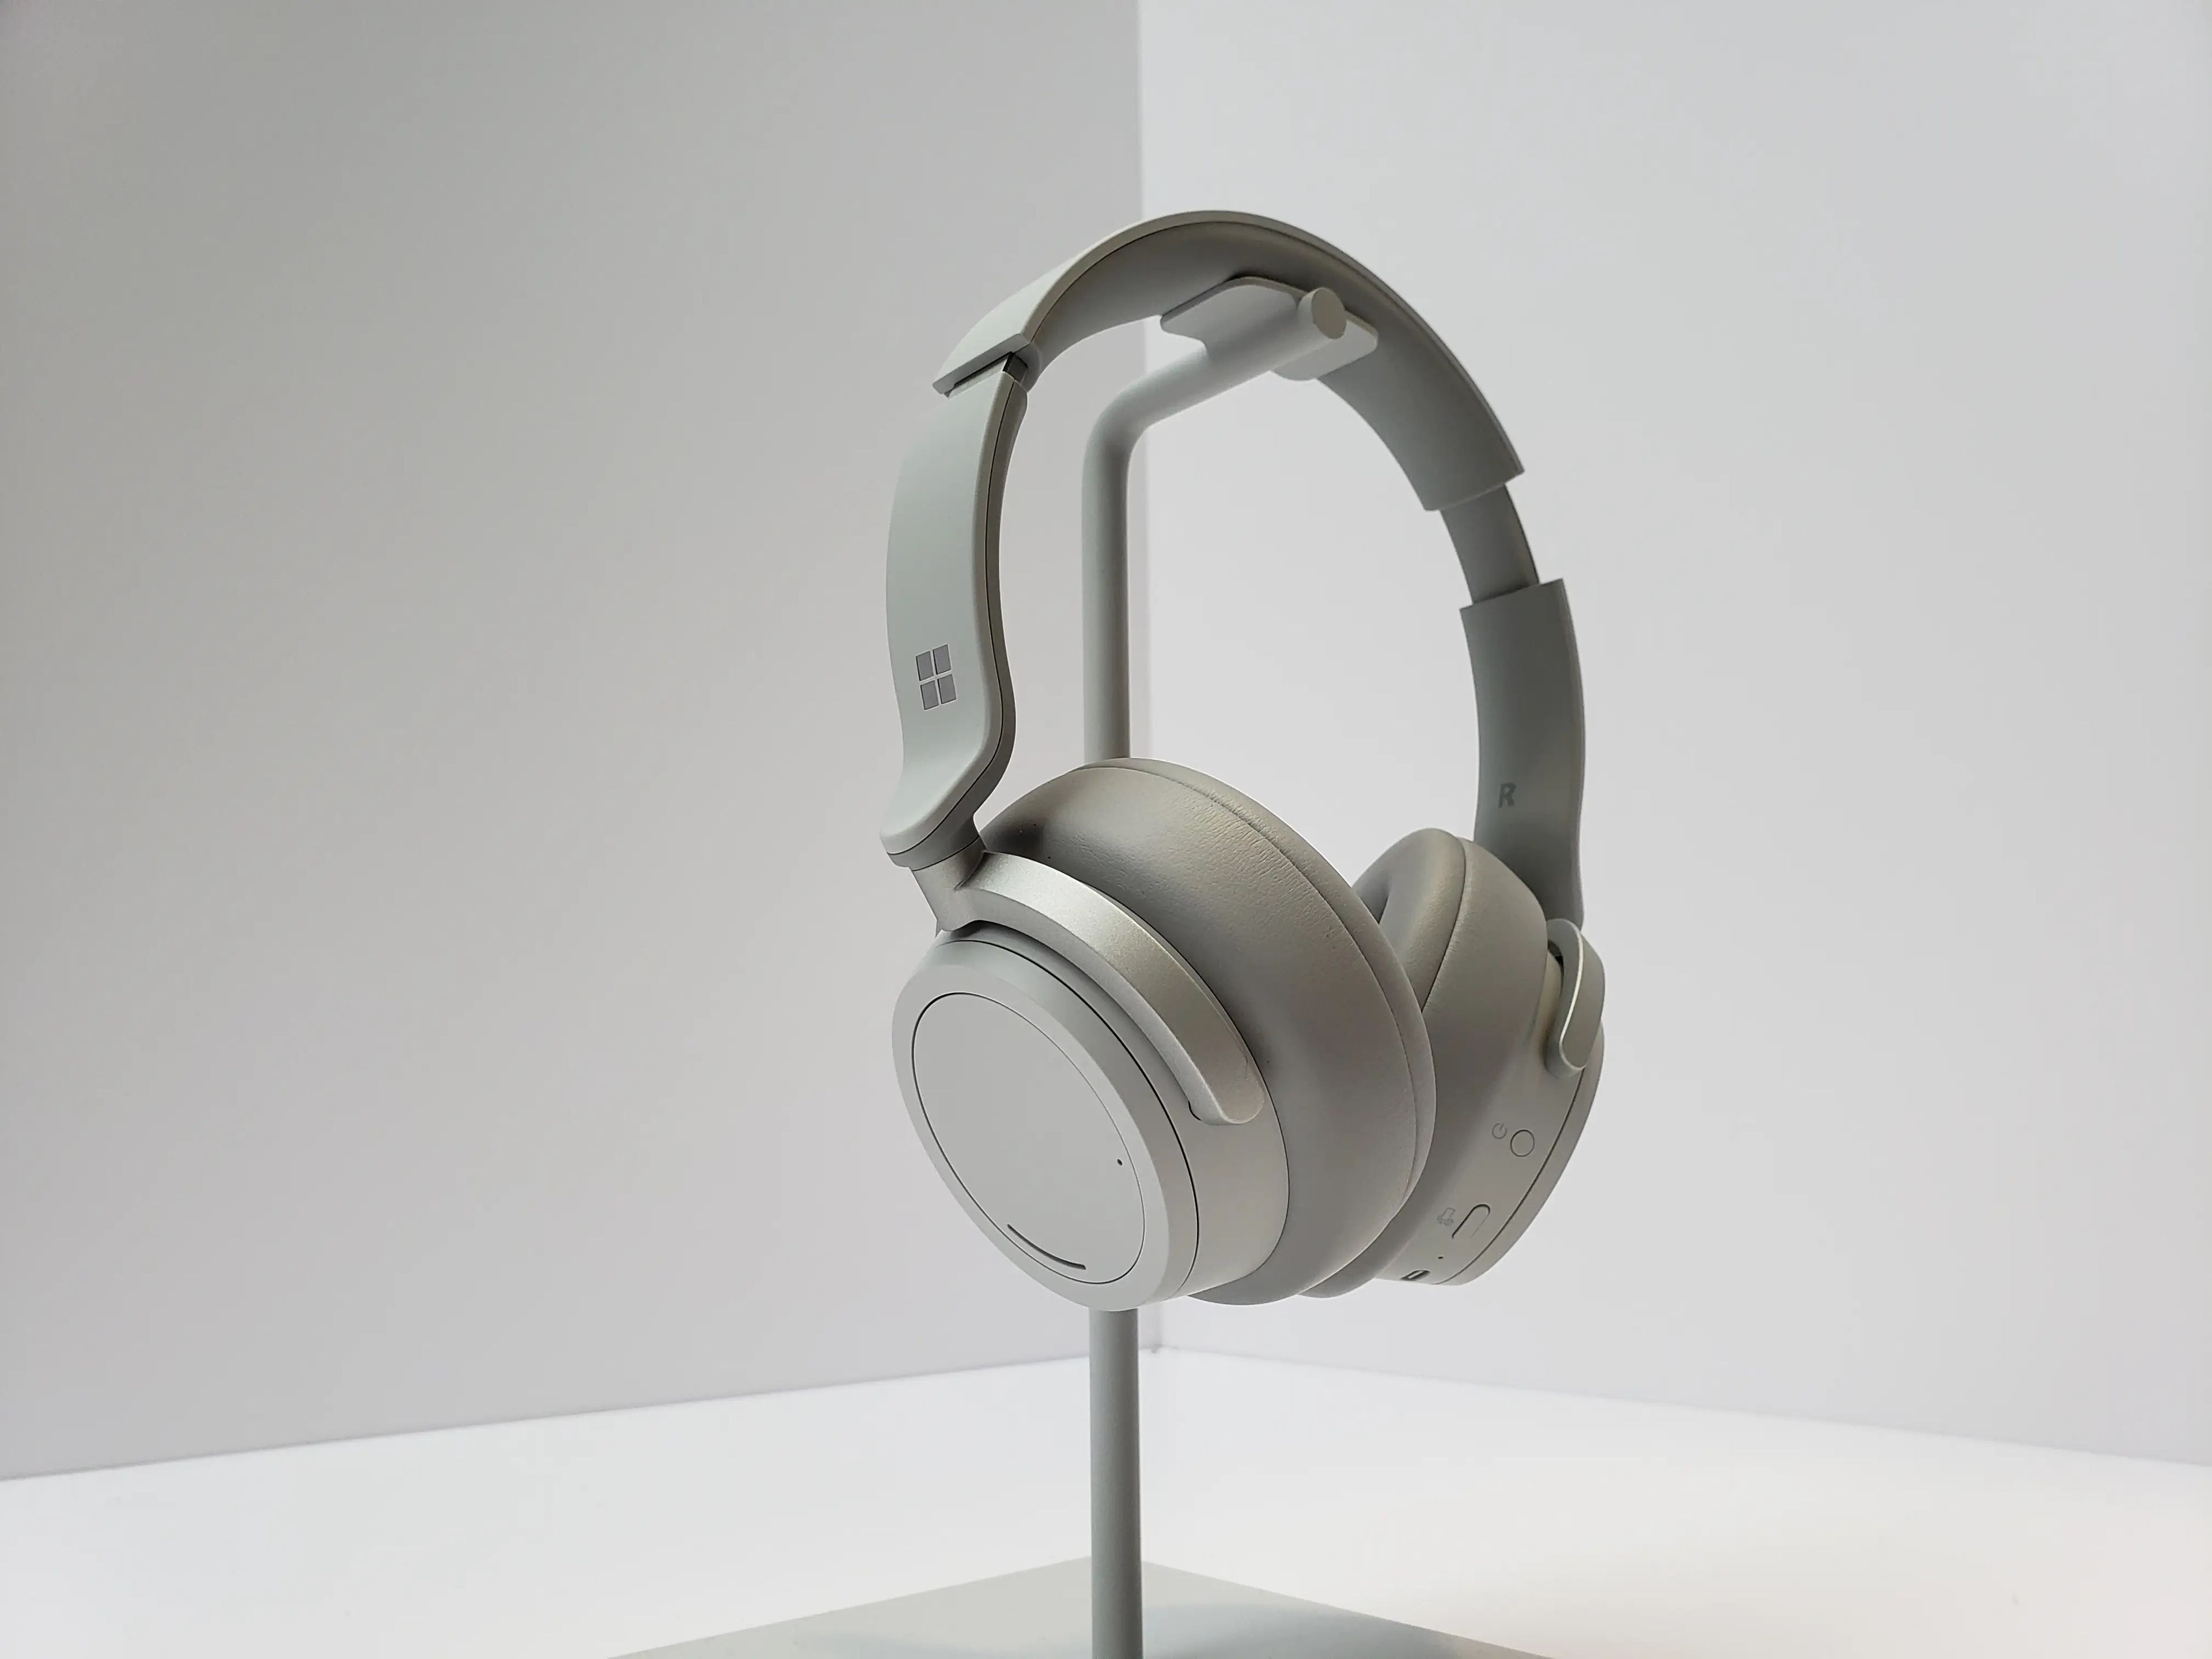 Los Surface Headphones 2, de 280 euros, contaban con cancelación de ruido y permitían hablar con el asistente de voz Cortana.